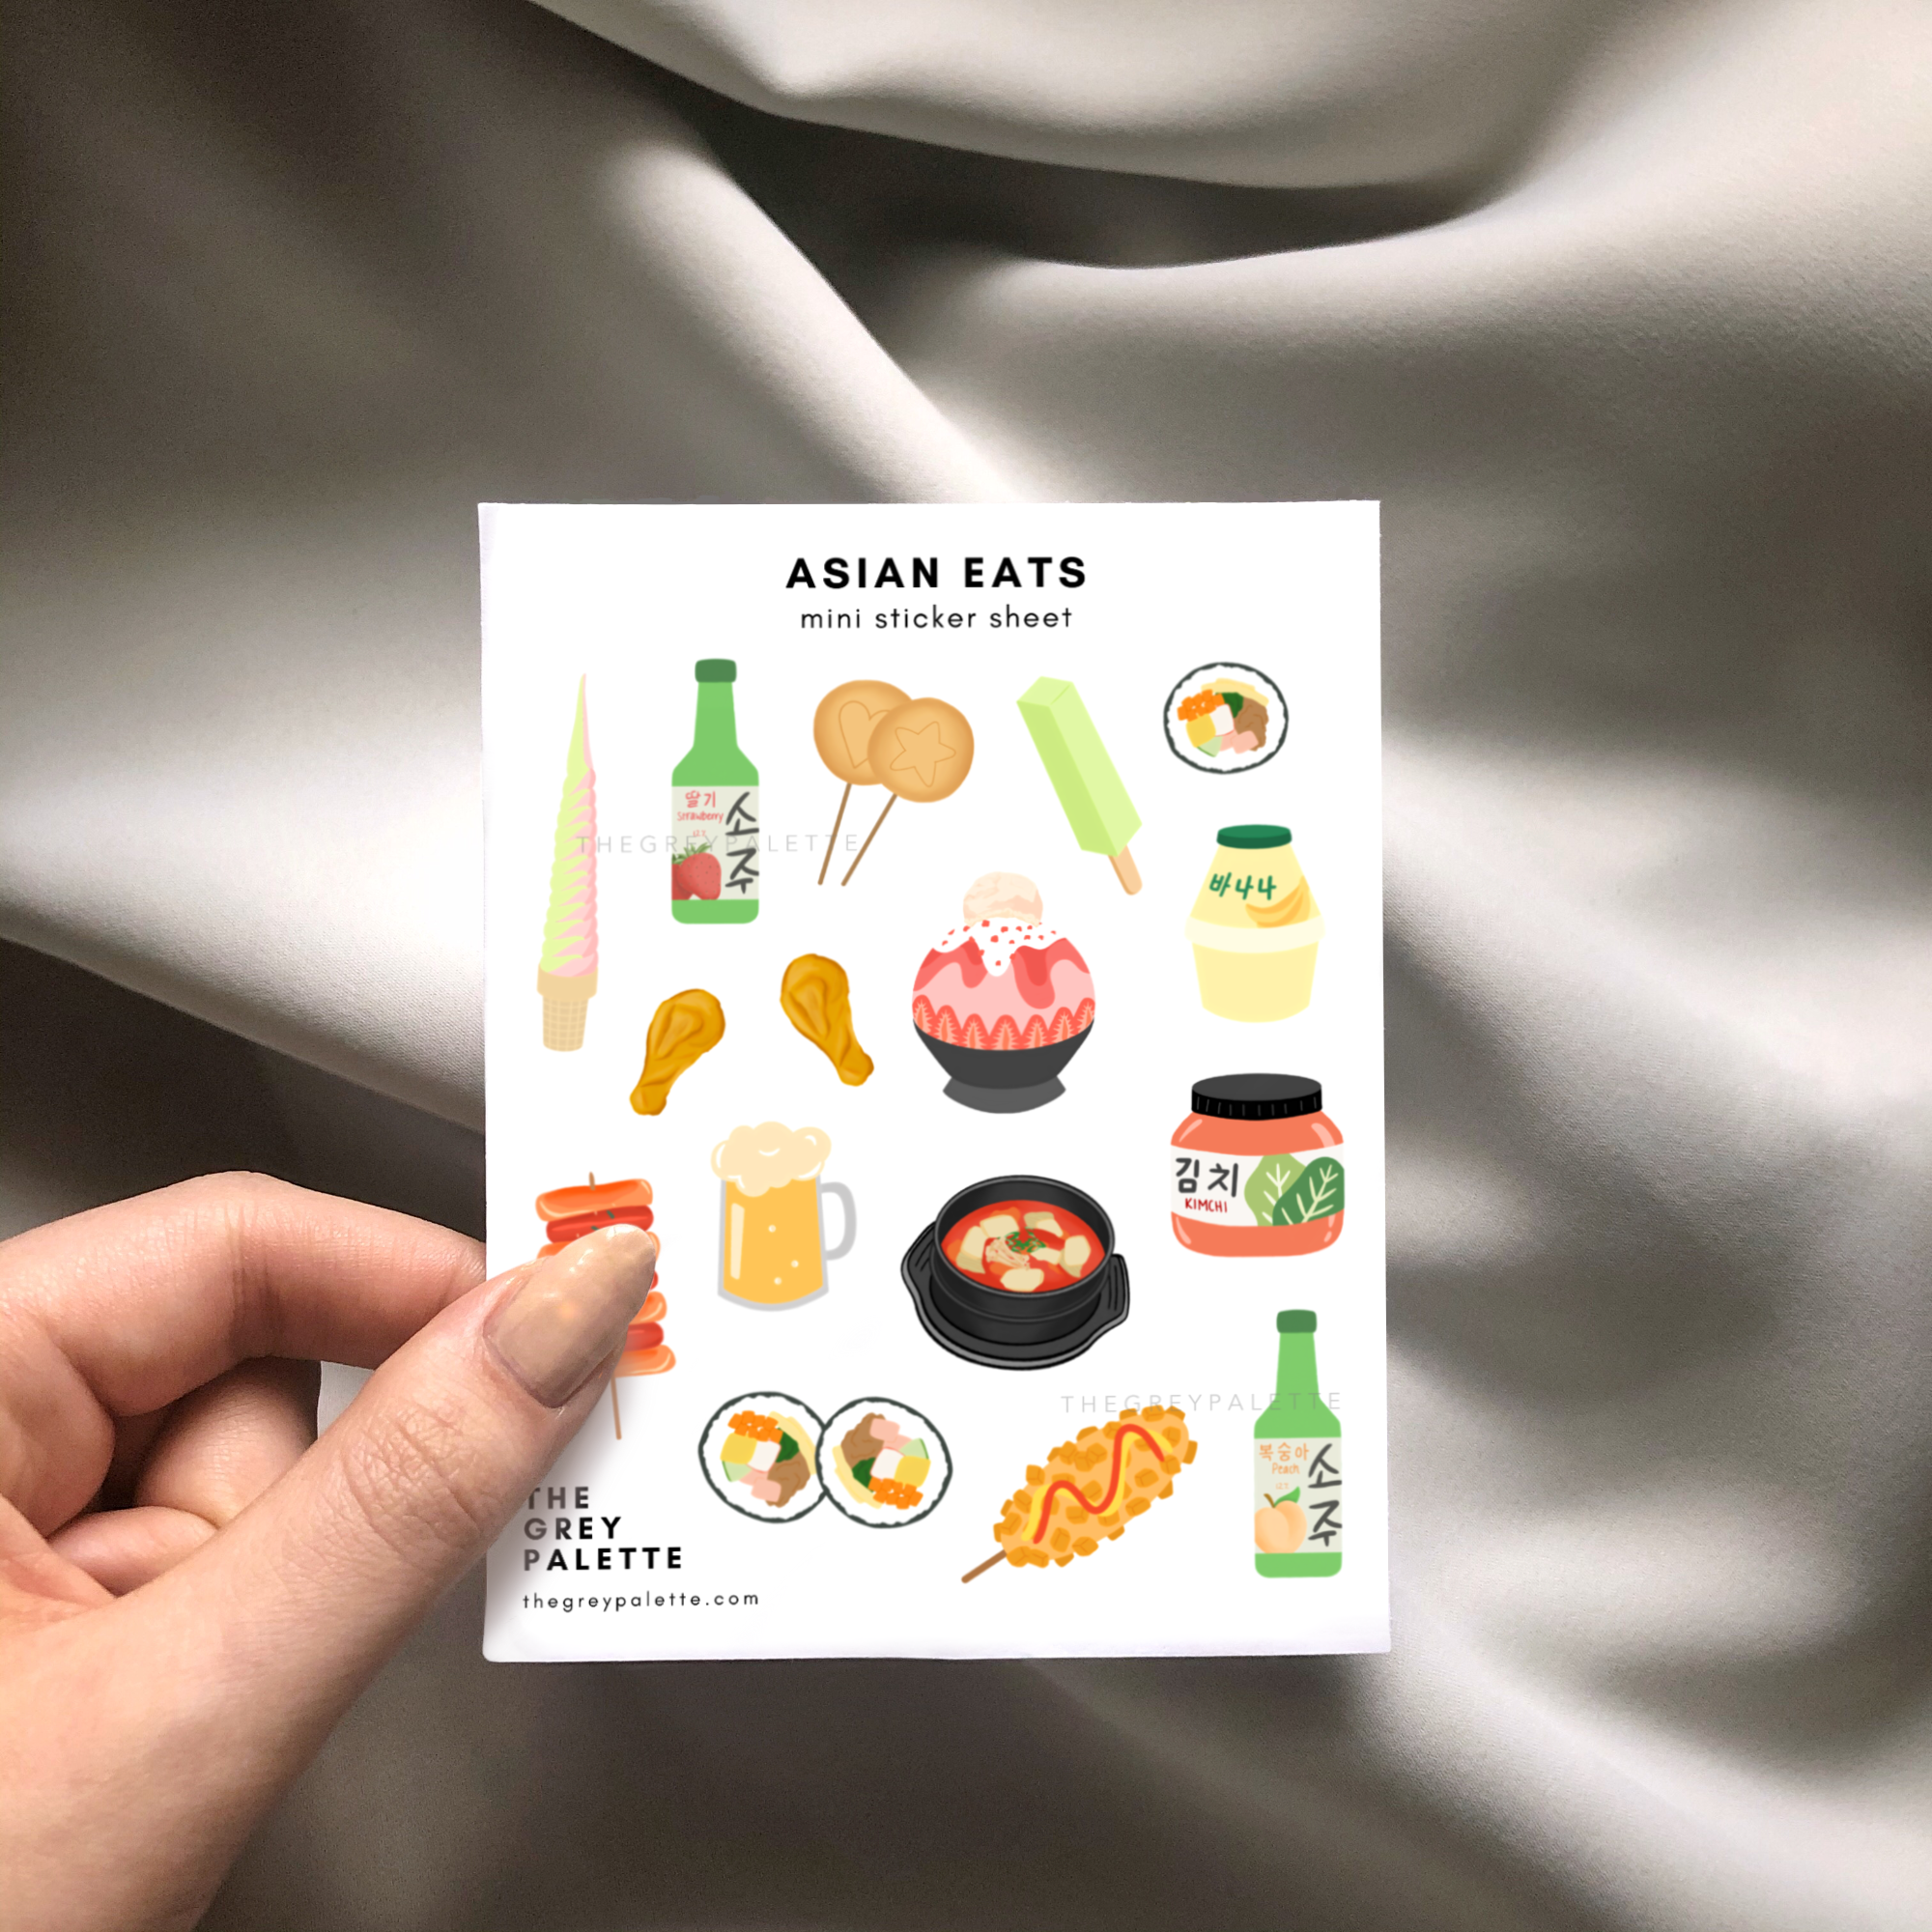 My Korean Kitchen Sticker Sheet